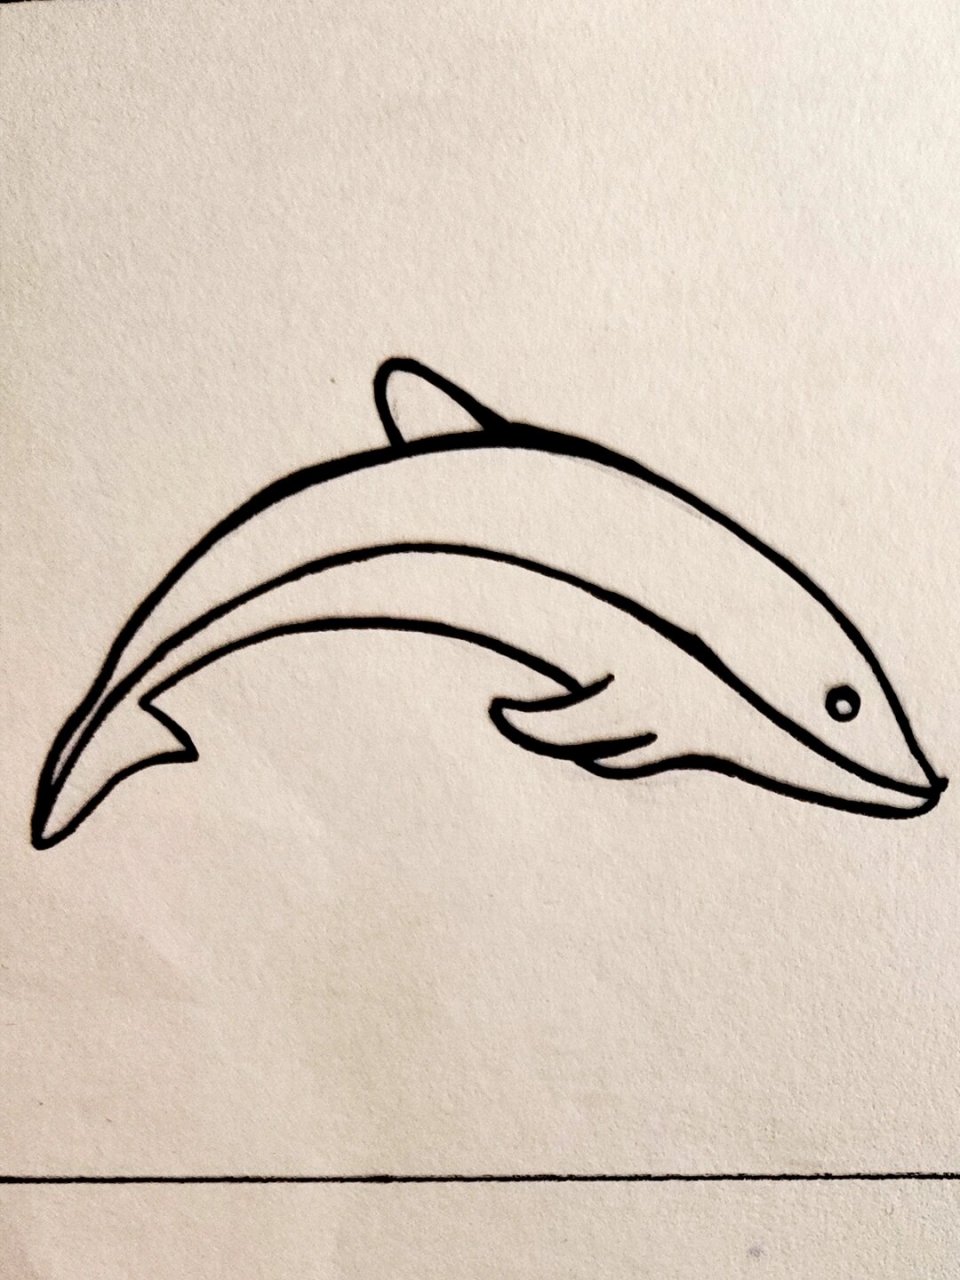 Q版海豚简笔画图片